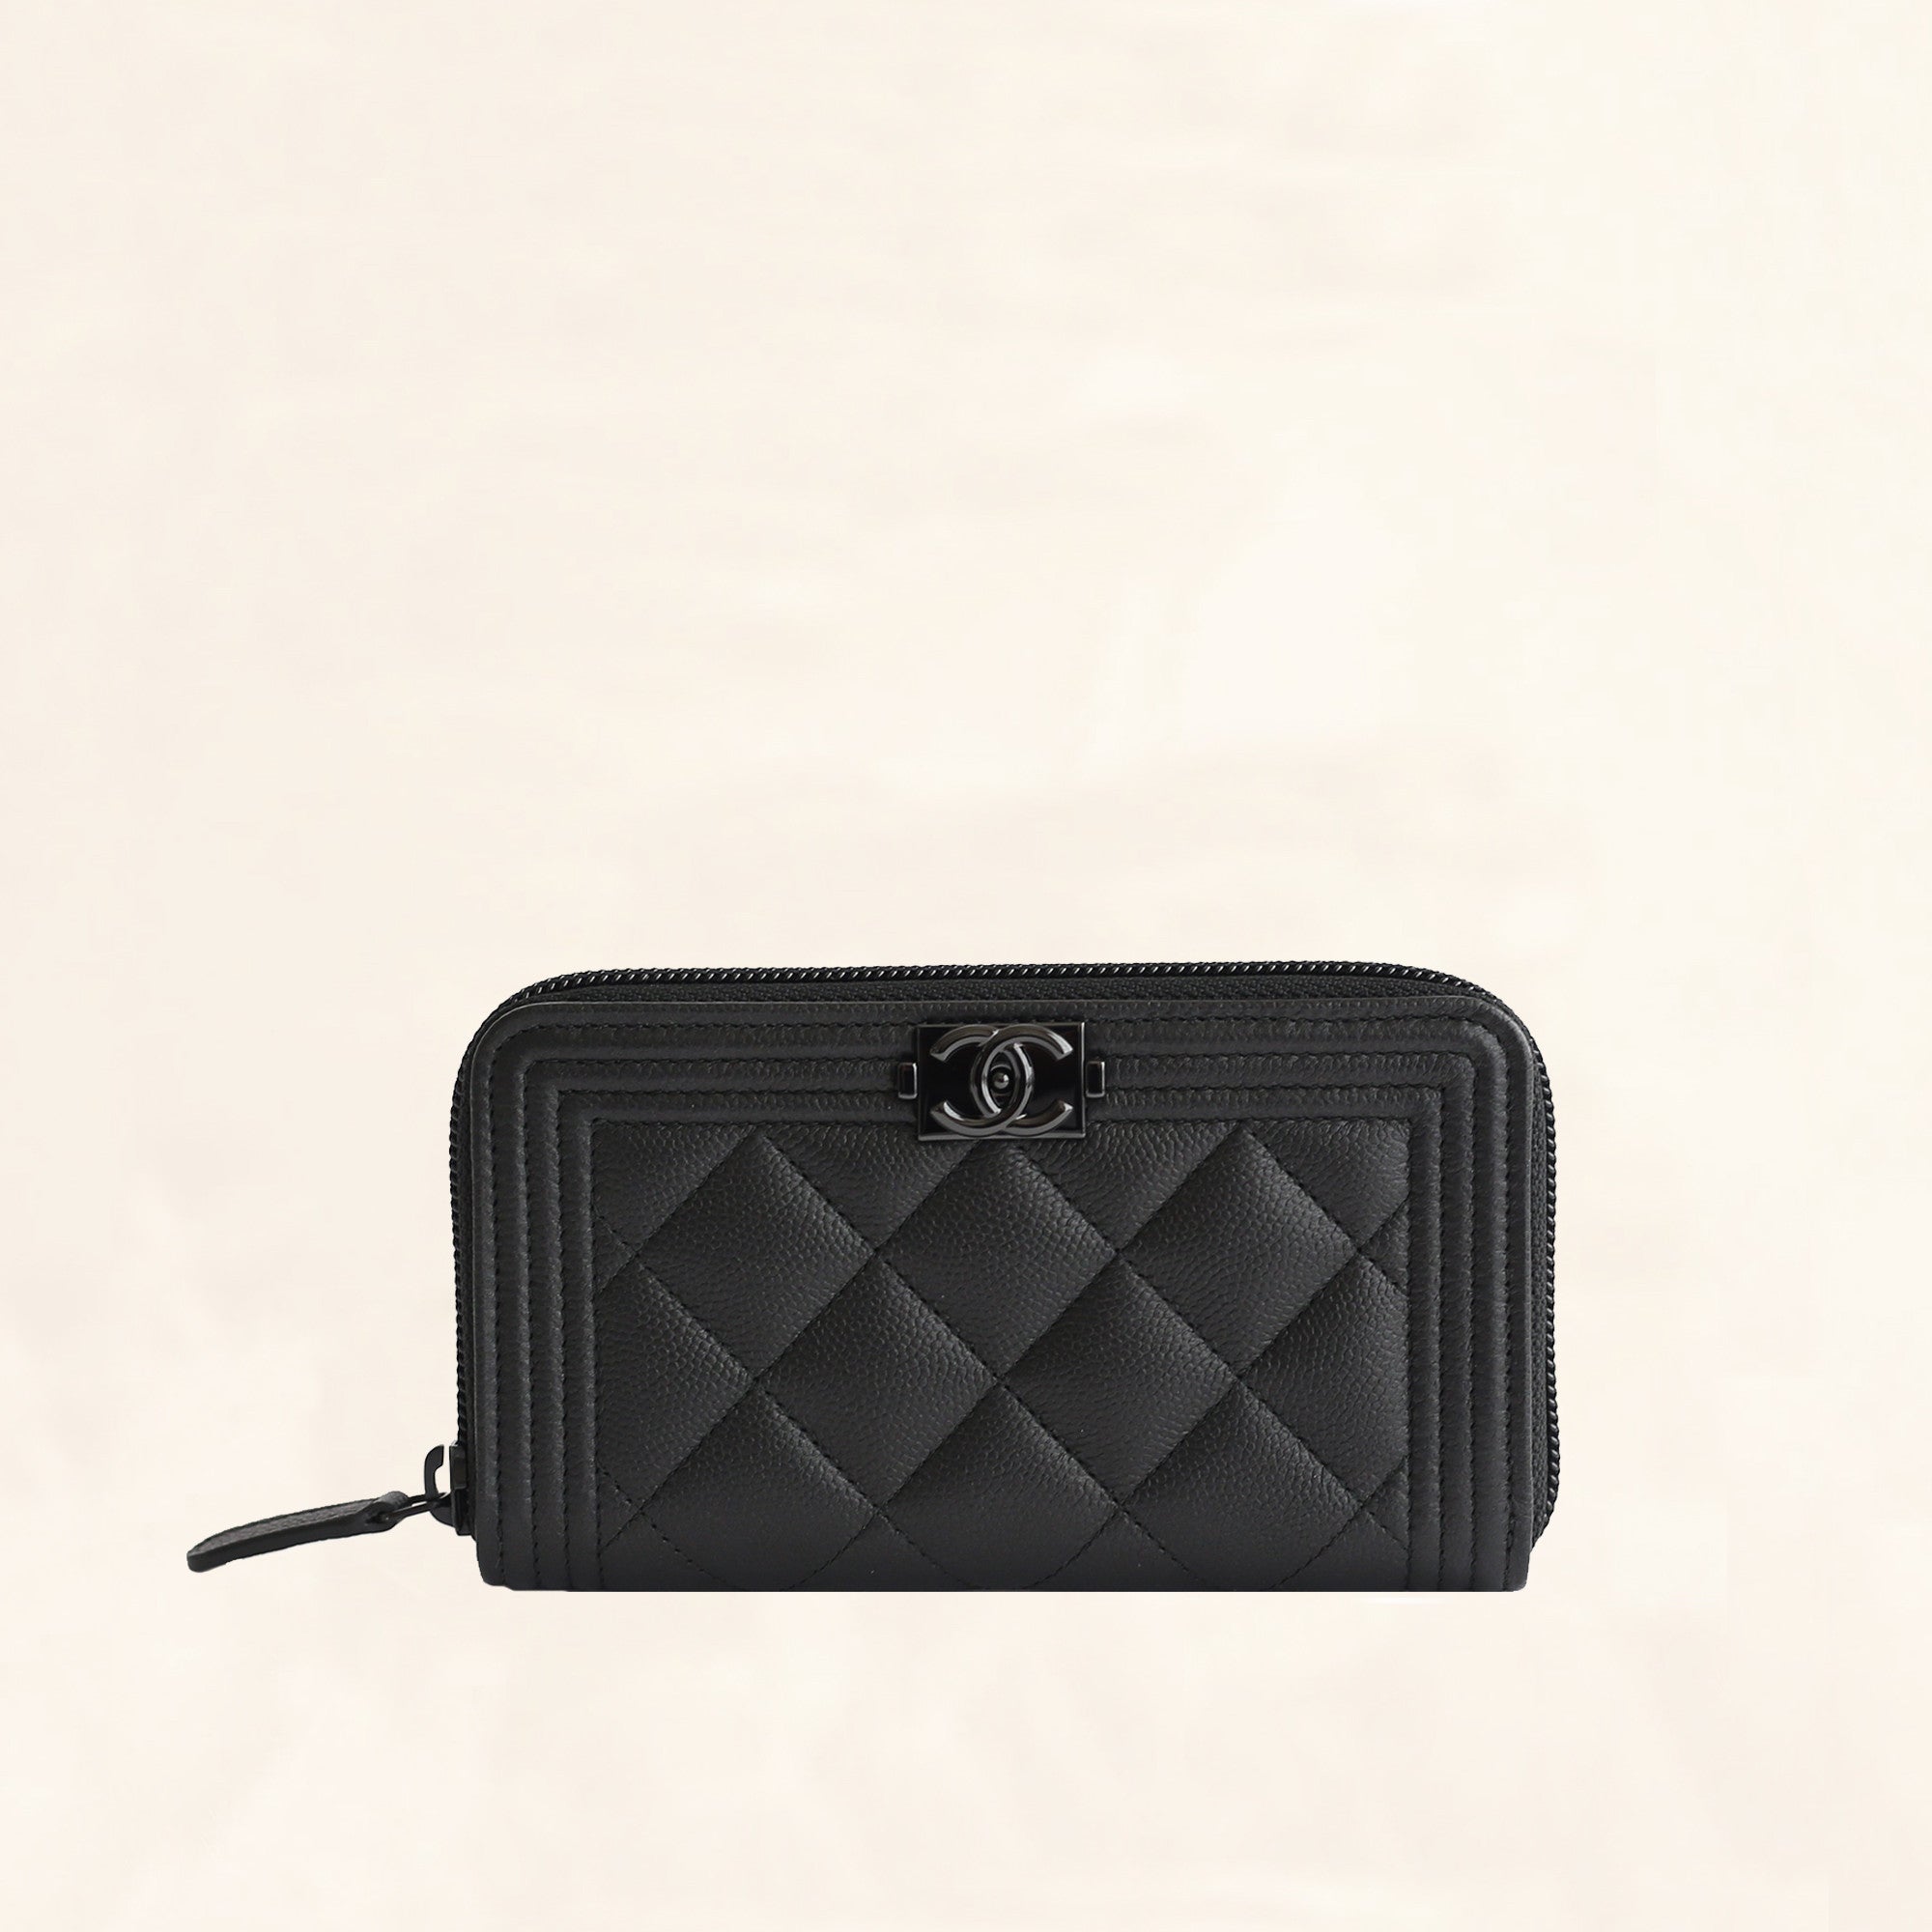 chanel black wallet zip